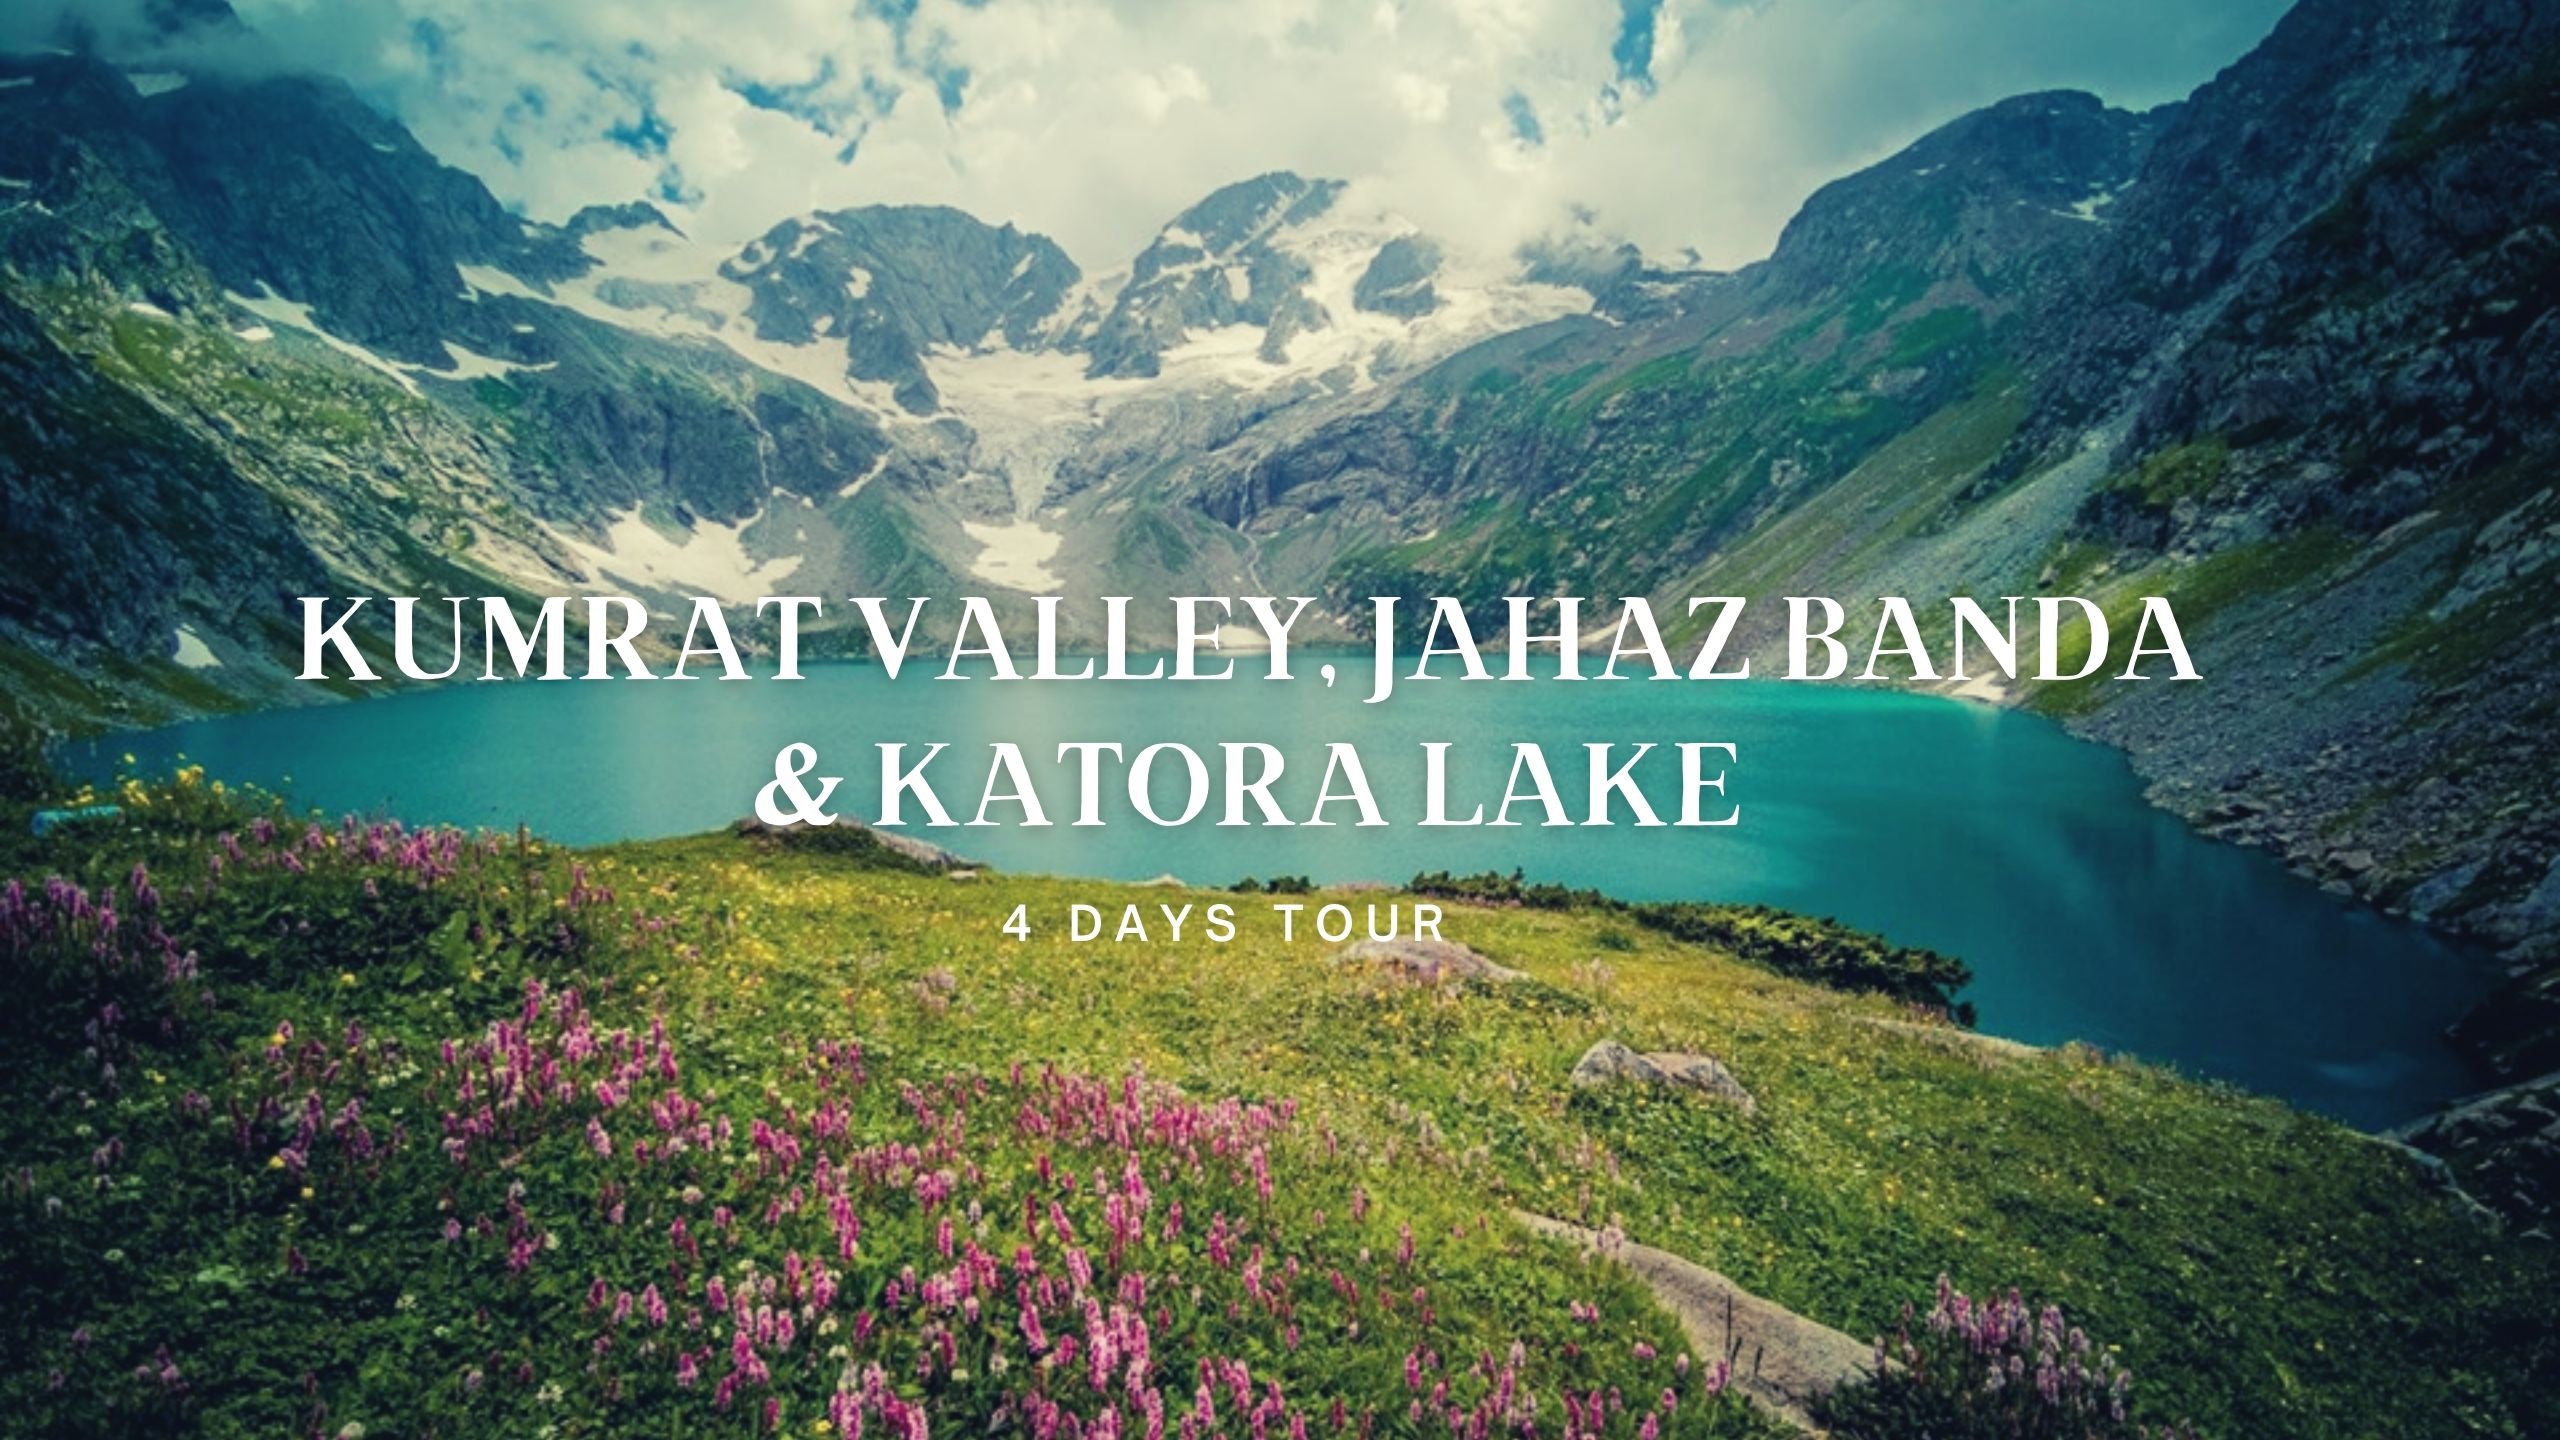 04 Days Trip Package To Kumrat Valley, Jahaz Banda And Katora Lake 